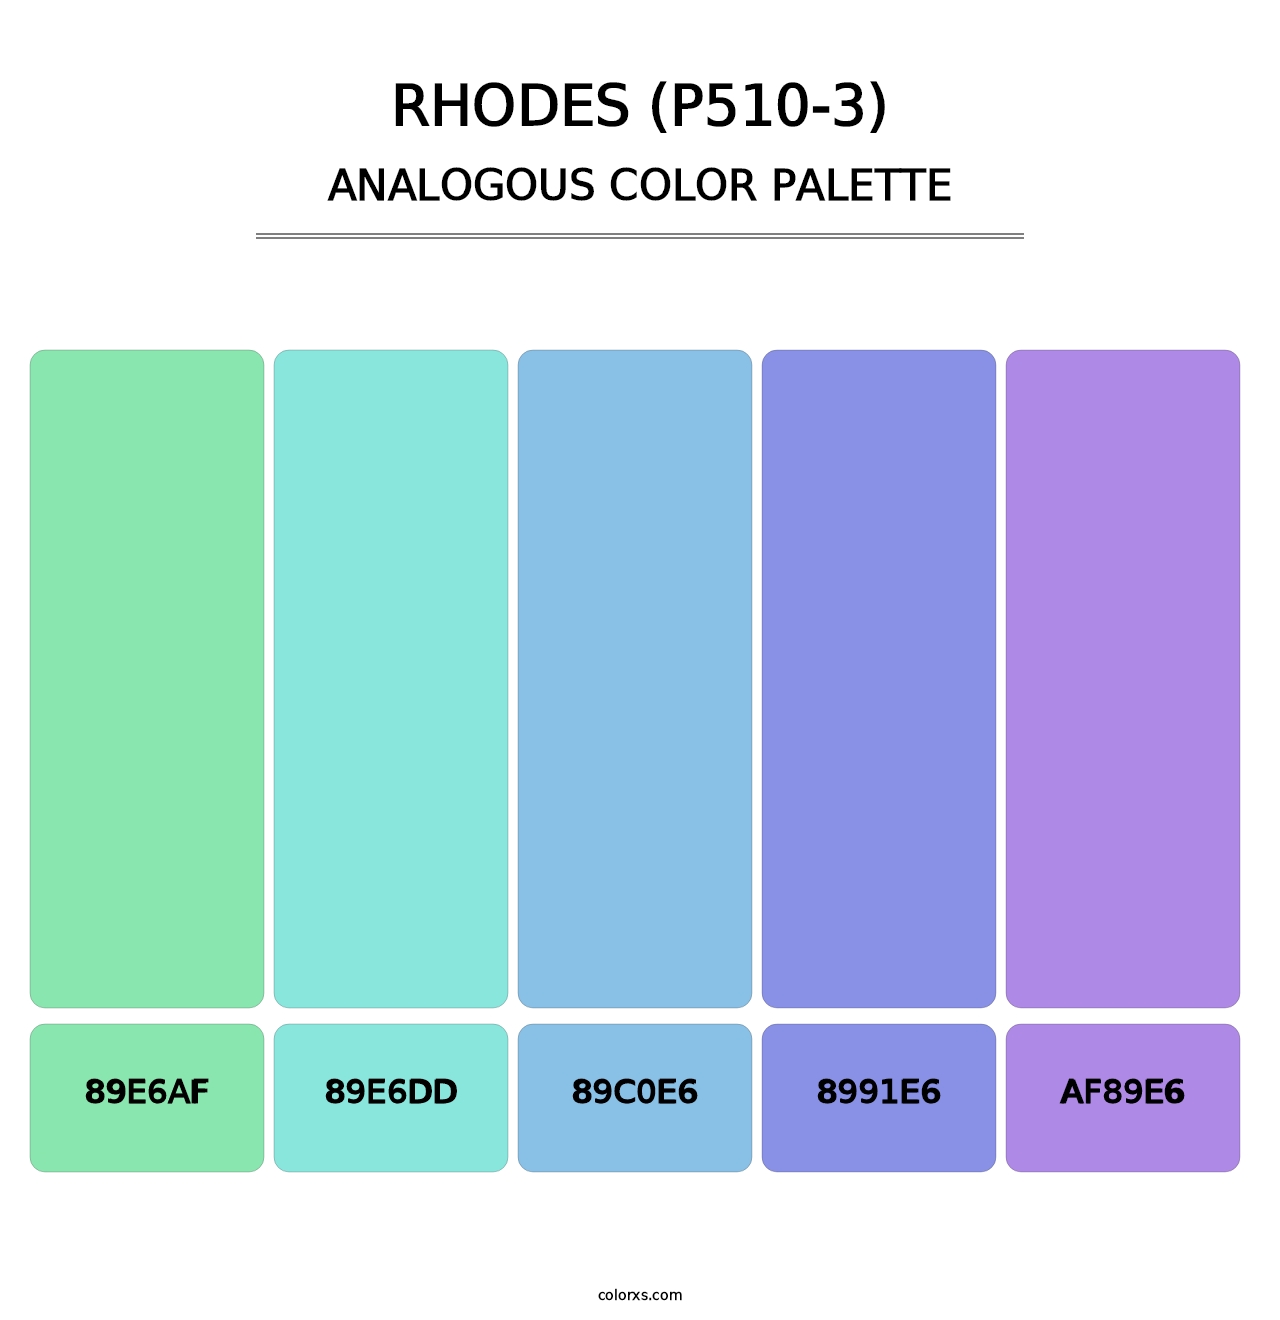 Rhodes (P510-3) - Analogous Color Palette